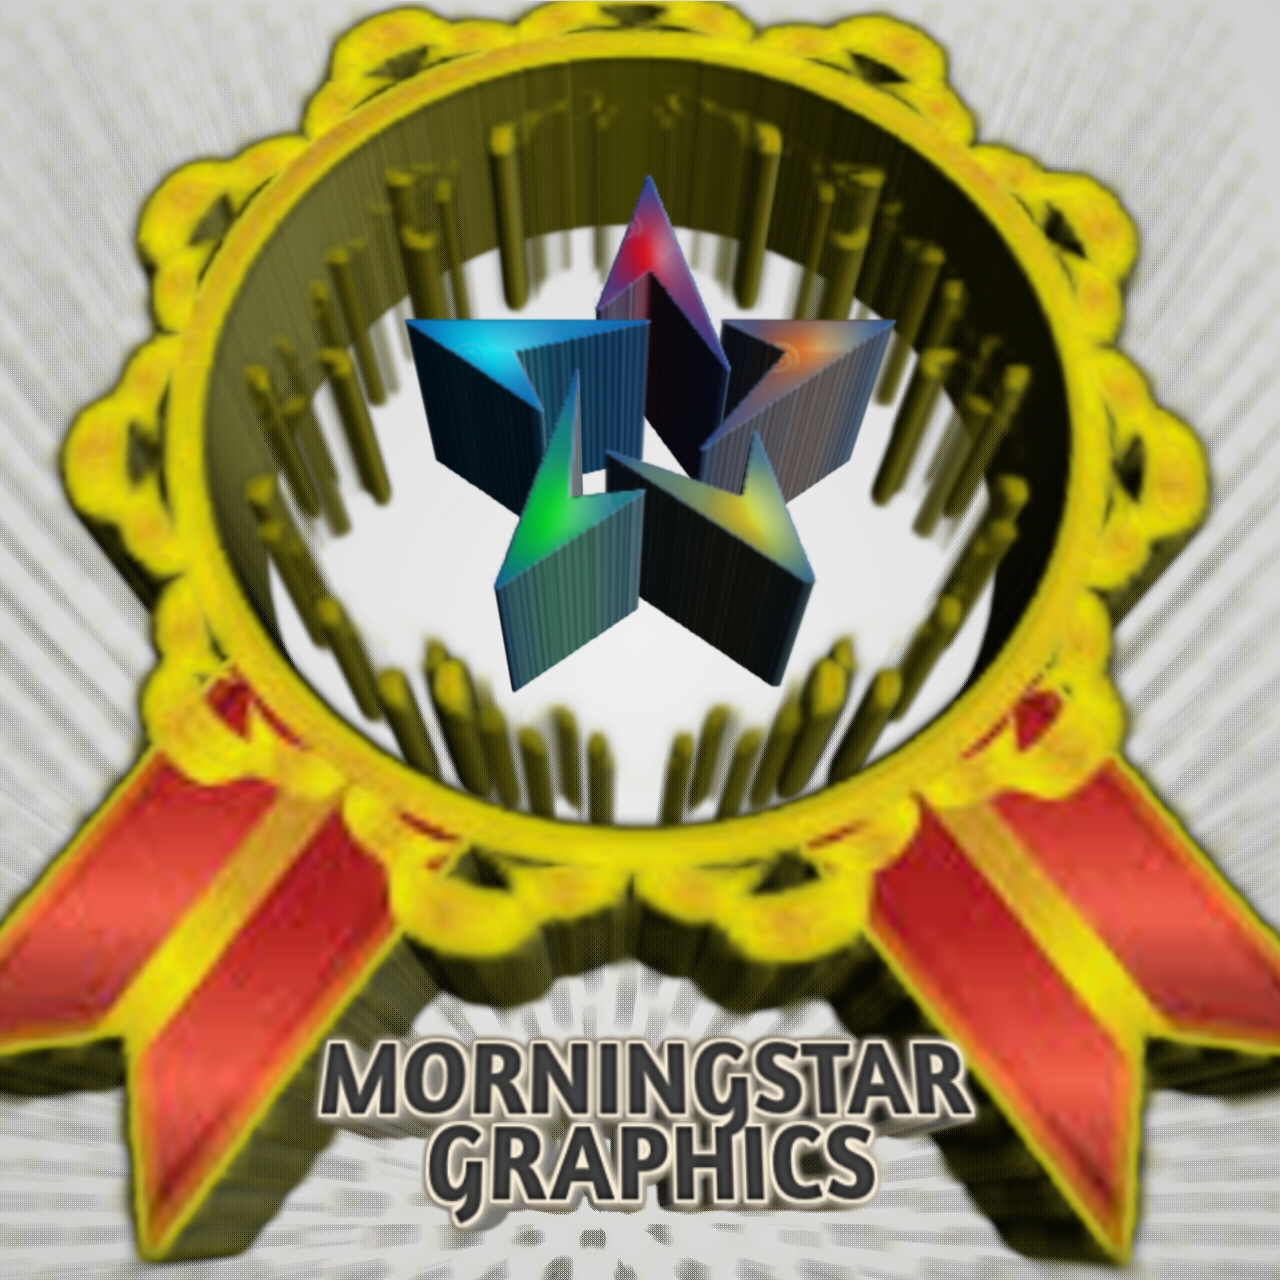 Morningstar provider